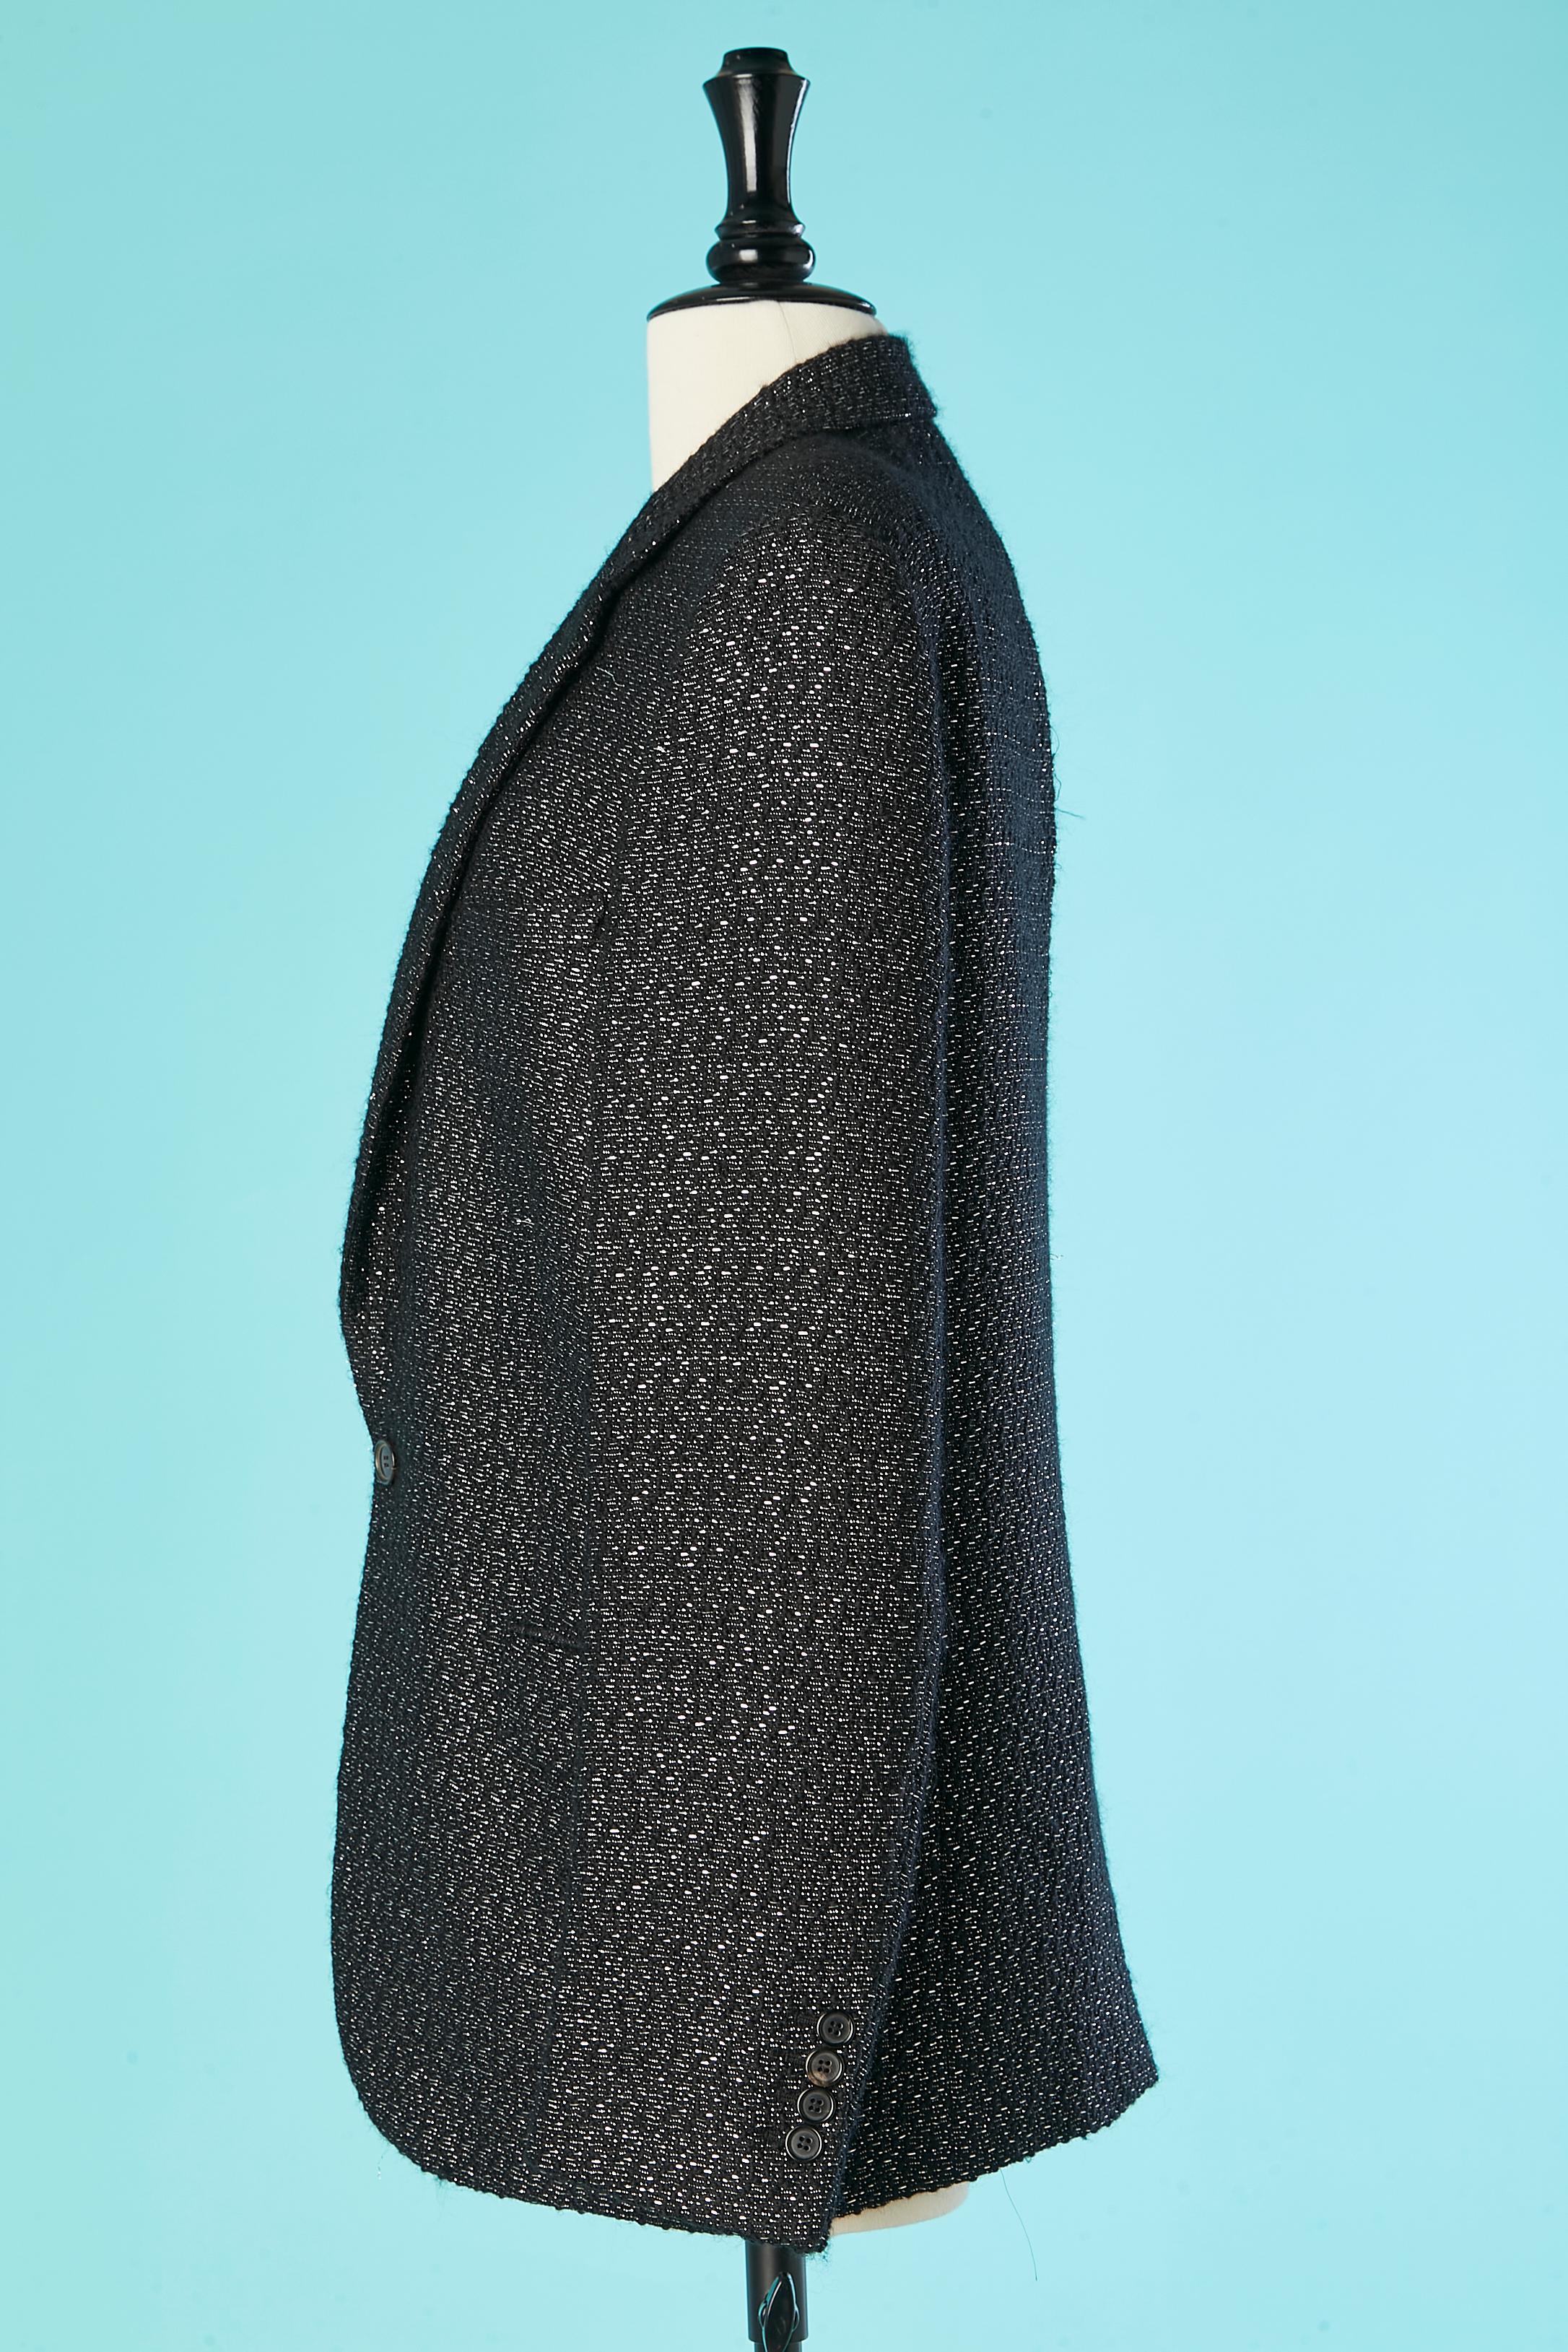 Blazer croisé en laine noire et lurex argenté Dior Homme by Hedi Slimane  Pour hommes en vente